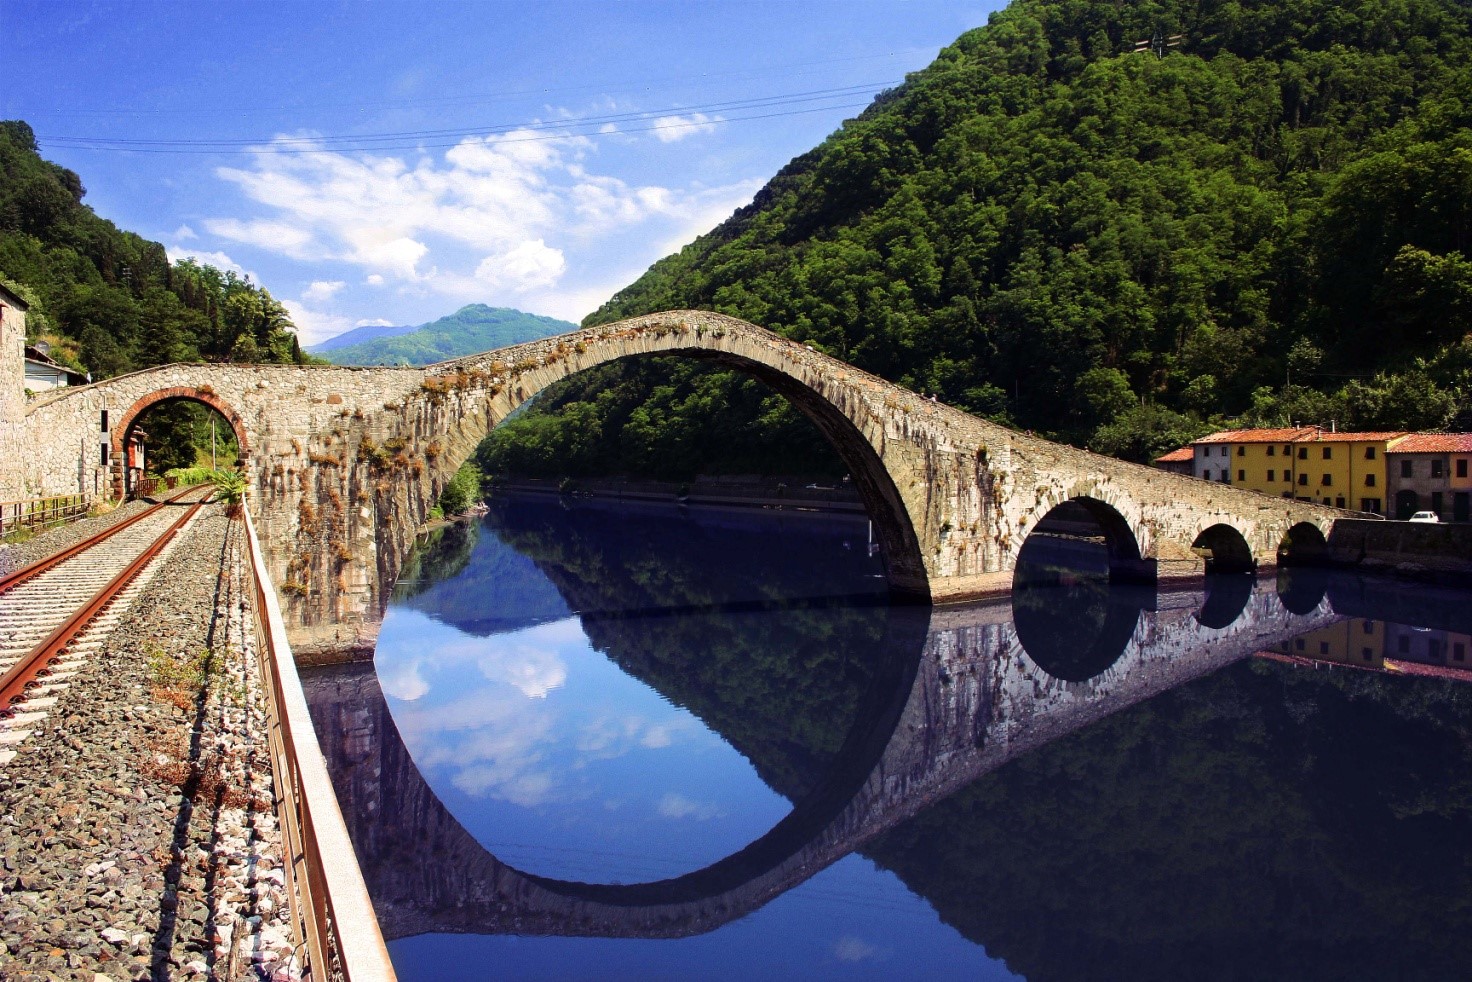 Stazioni ferroviarie d’Italia: Borgo a Mozzano e “il ponte del diavolo”